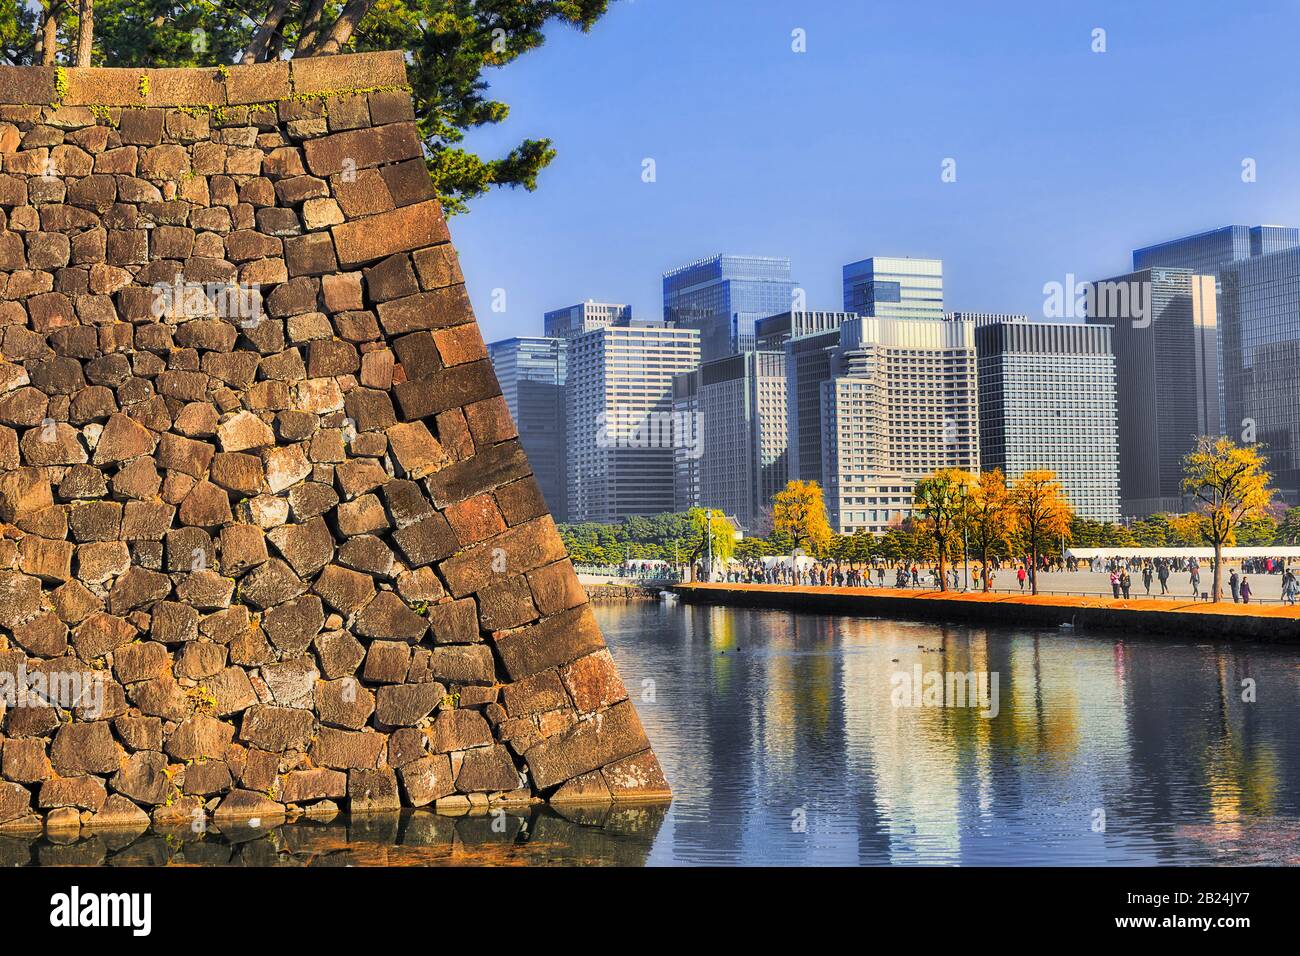 L'eau s'amarra autour de forts murs en pierre d'un parc et de jardins à Tokyo CBD une journée ensoleillée avec des foules de touristes. Banque D'Images